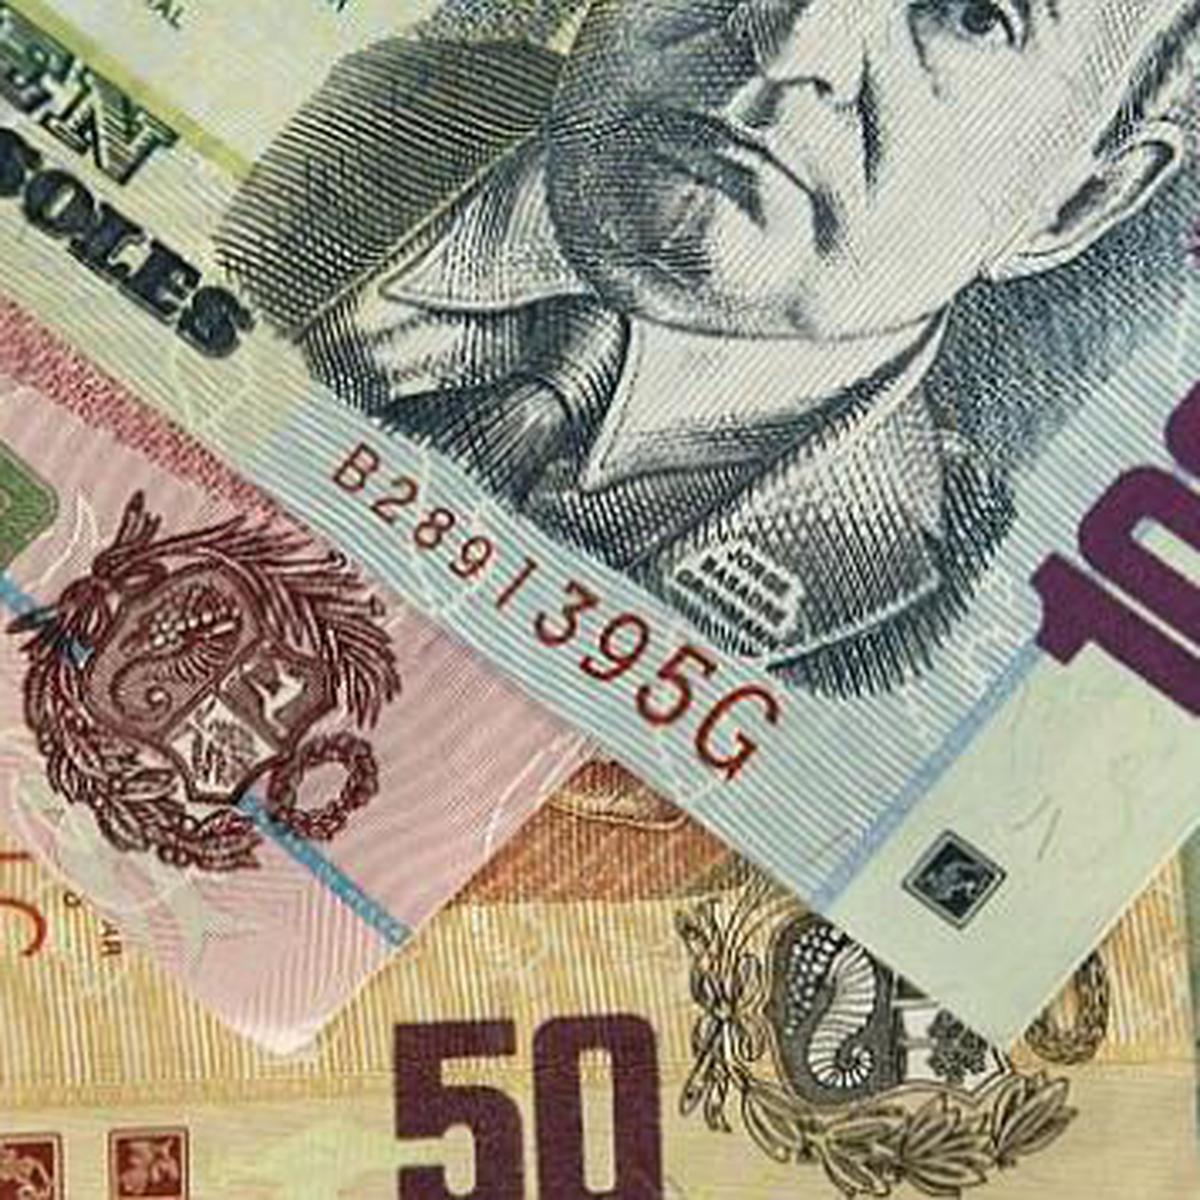 Cómo identificar billetes falsos: La Policía Nacional advierte